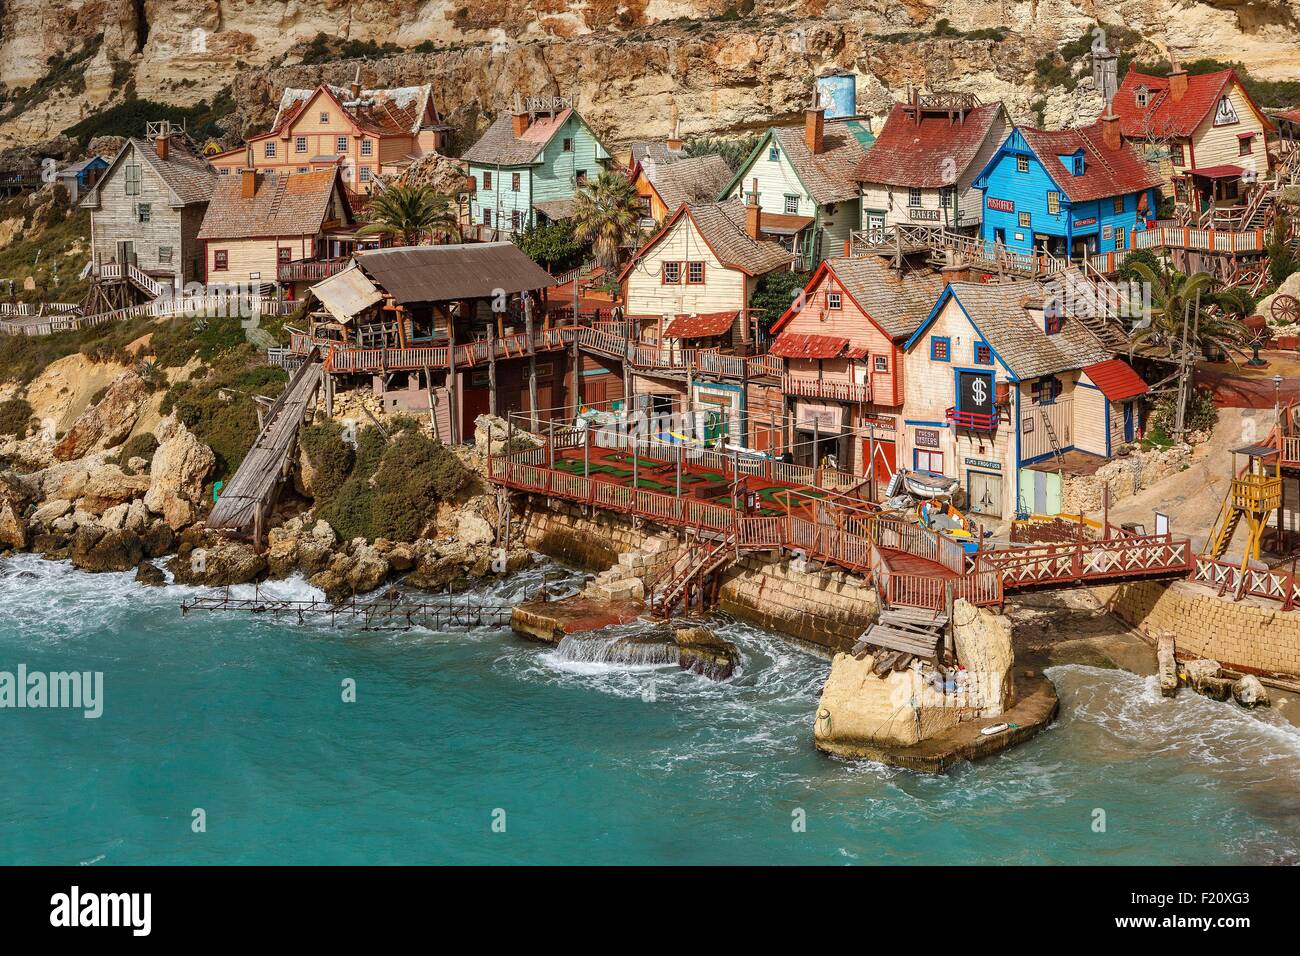 Malta, Mellieha, Anchor Bay, Popeye Village, vista general de la aldea de Popeye utilizado para el rodaje de una película Foto de stock